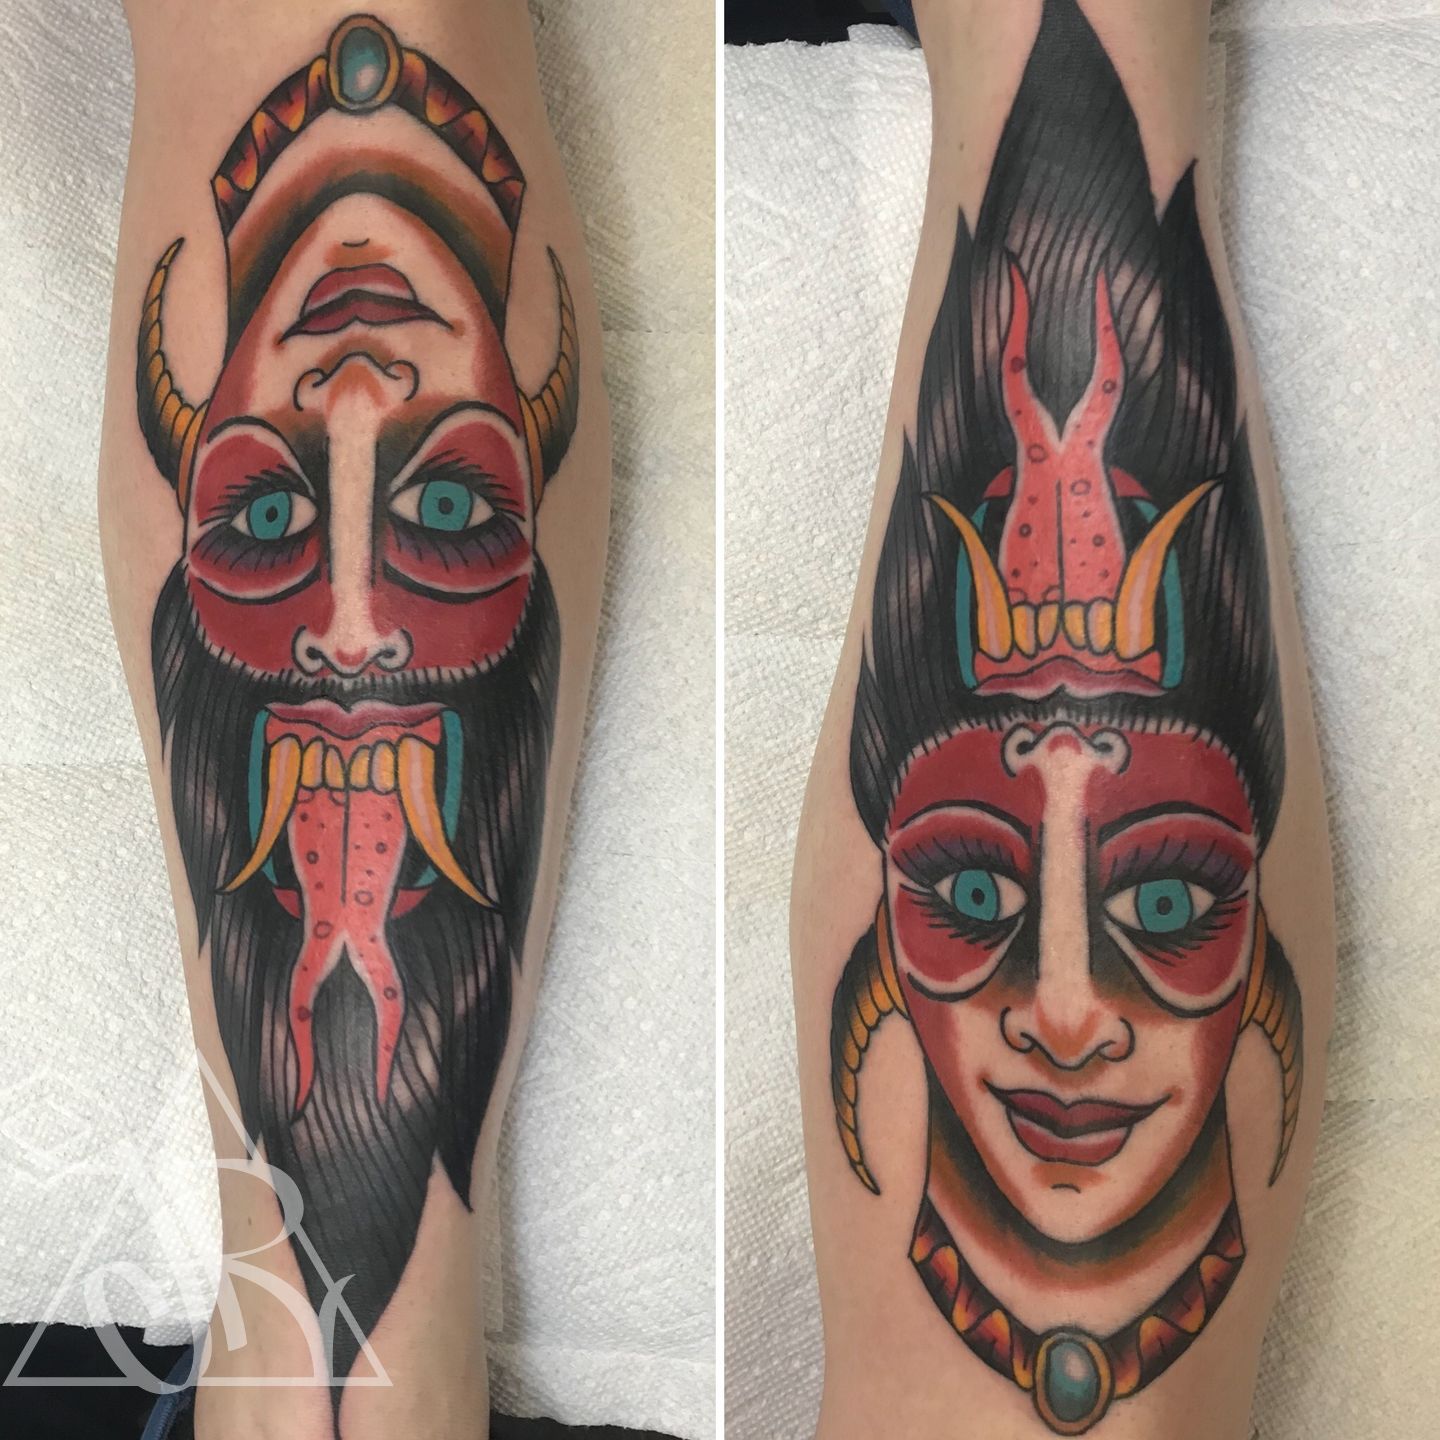 traditional woman devil tattoo